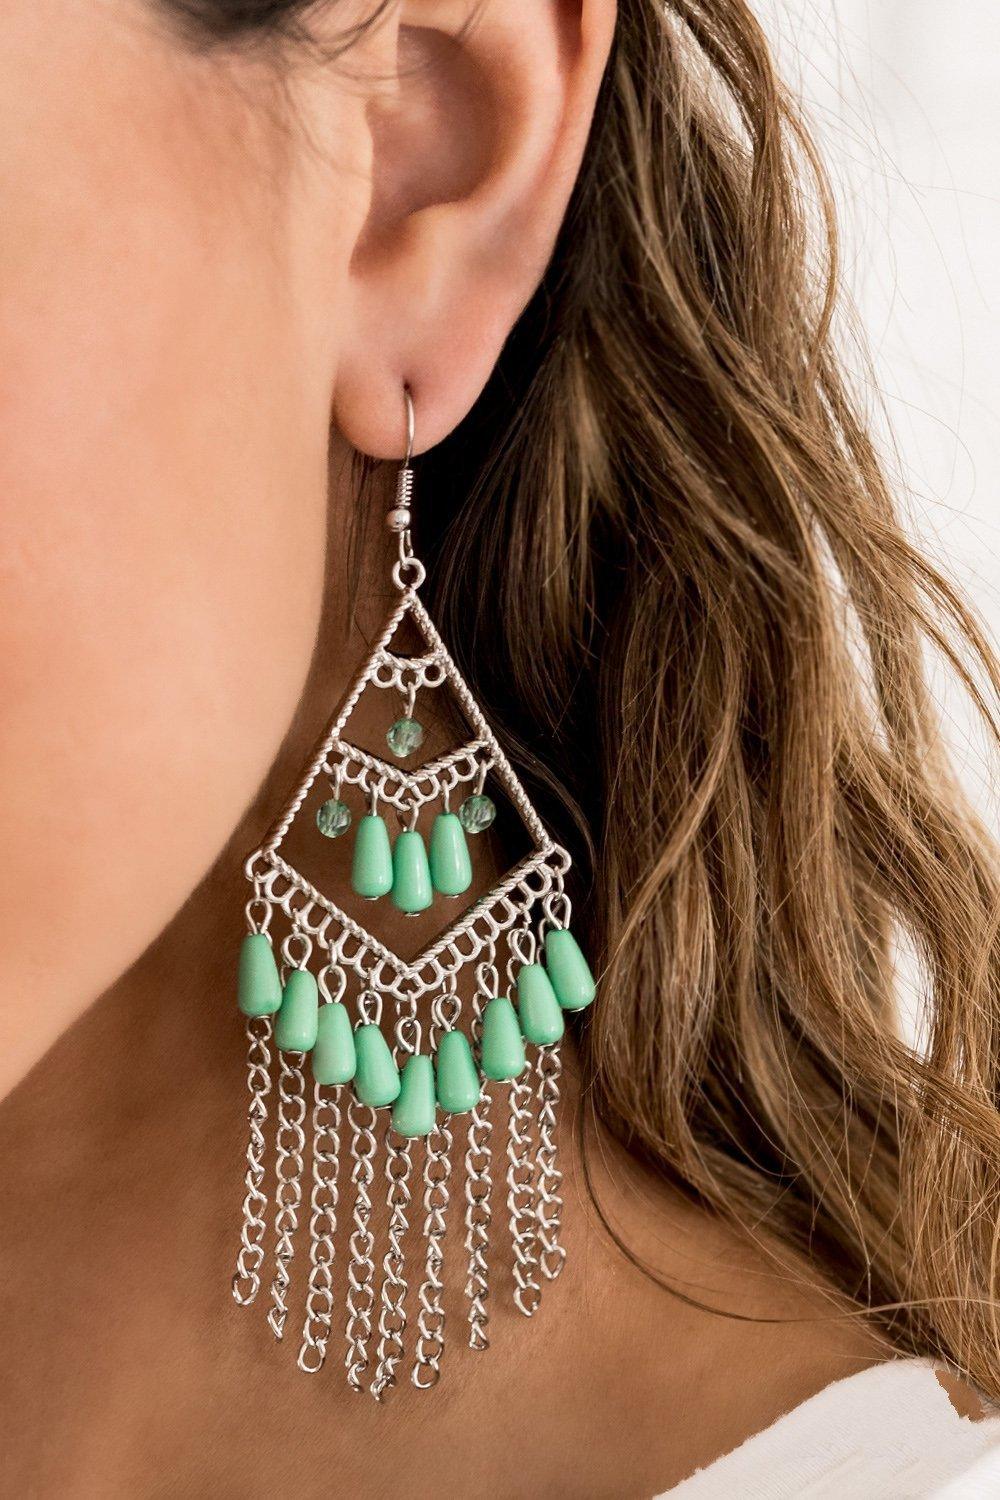 Trending Transcendence Green Earrings - Jewelry By Bretta